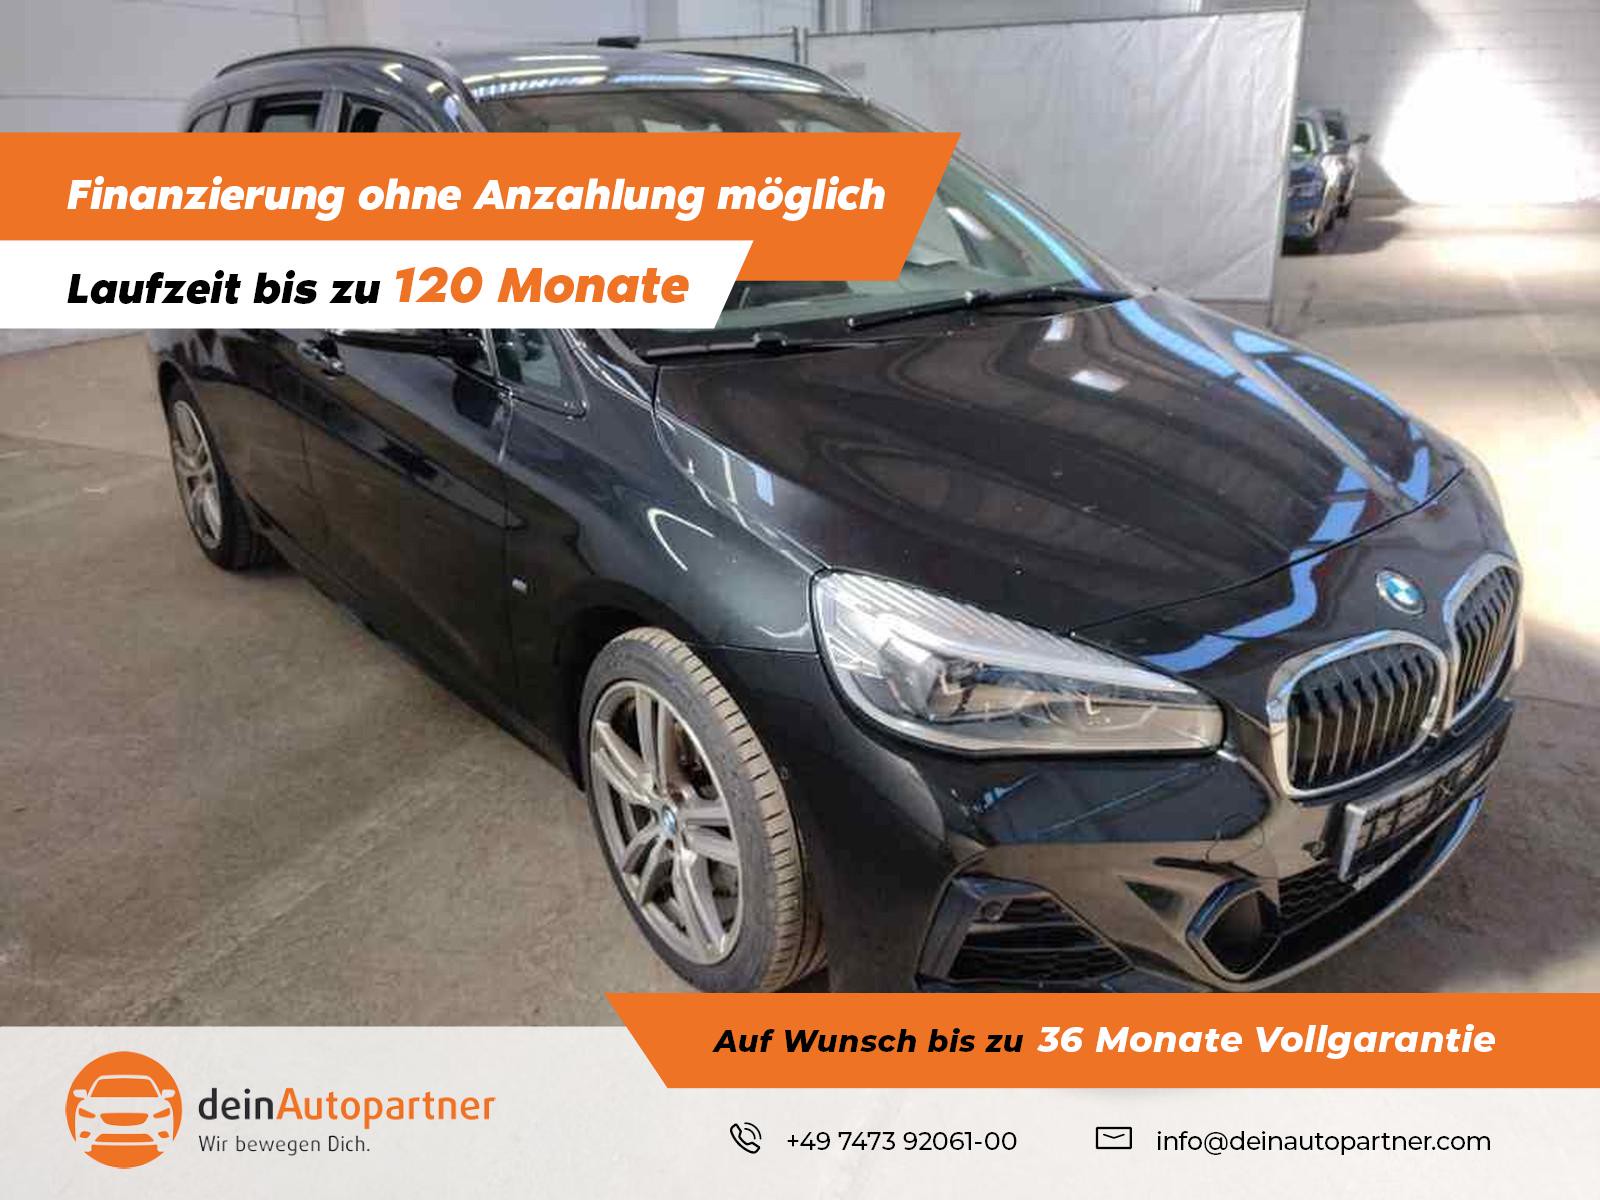 BMW 218 Gran Tourer 218i GT M Sport gebraucht kaufen in Mössingen Preis  24750 eur - Int.Nr.: 2096